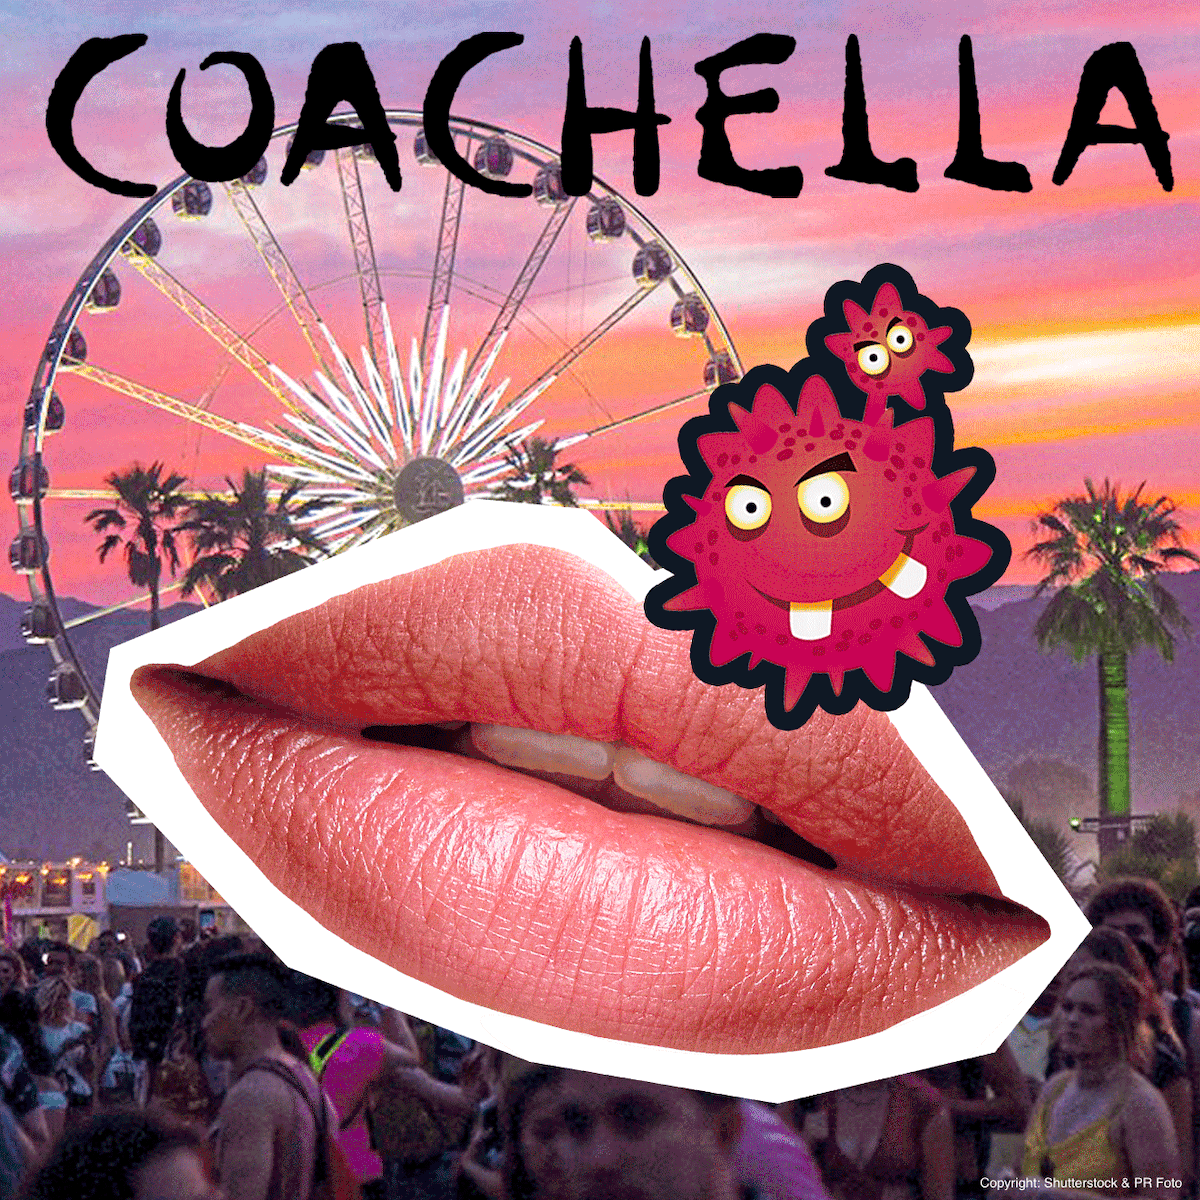 Auf dem Coachella-Festival gab es in diesem Jahr ungewöhnlich viele Herpes-Fälle.